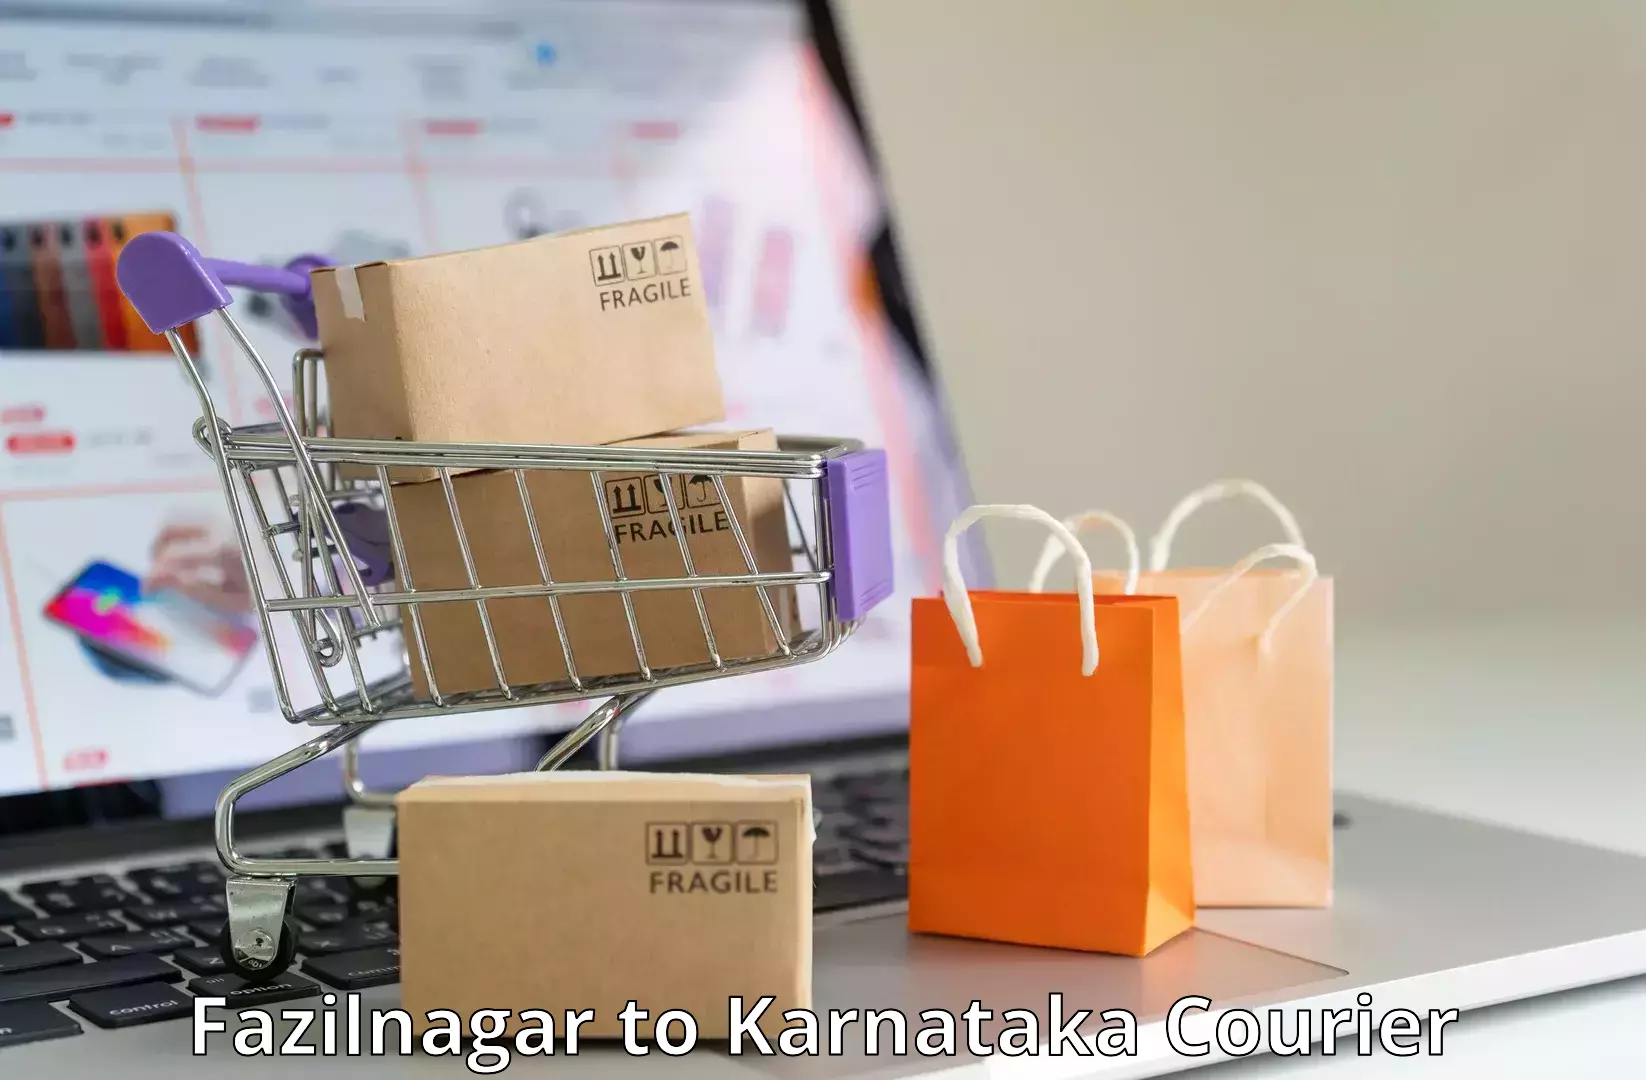 Business courier solutions Fazilnagar to Hosadurga